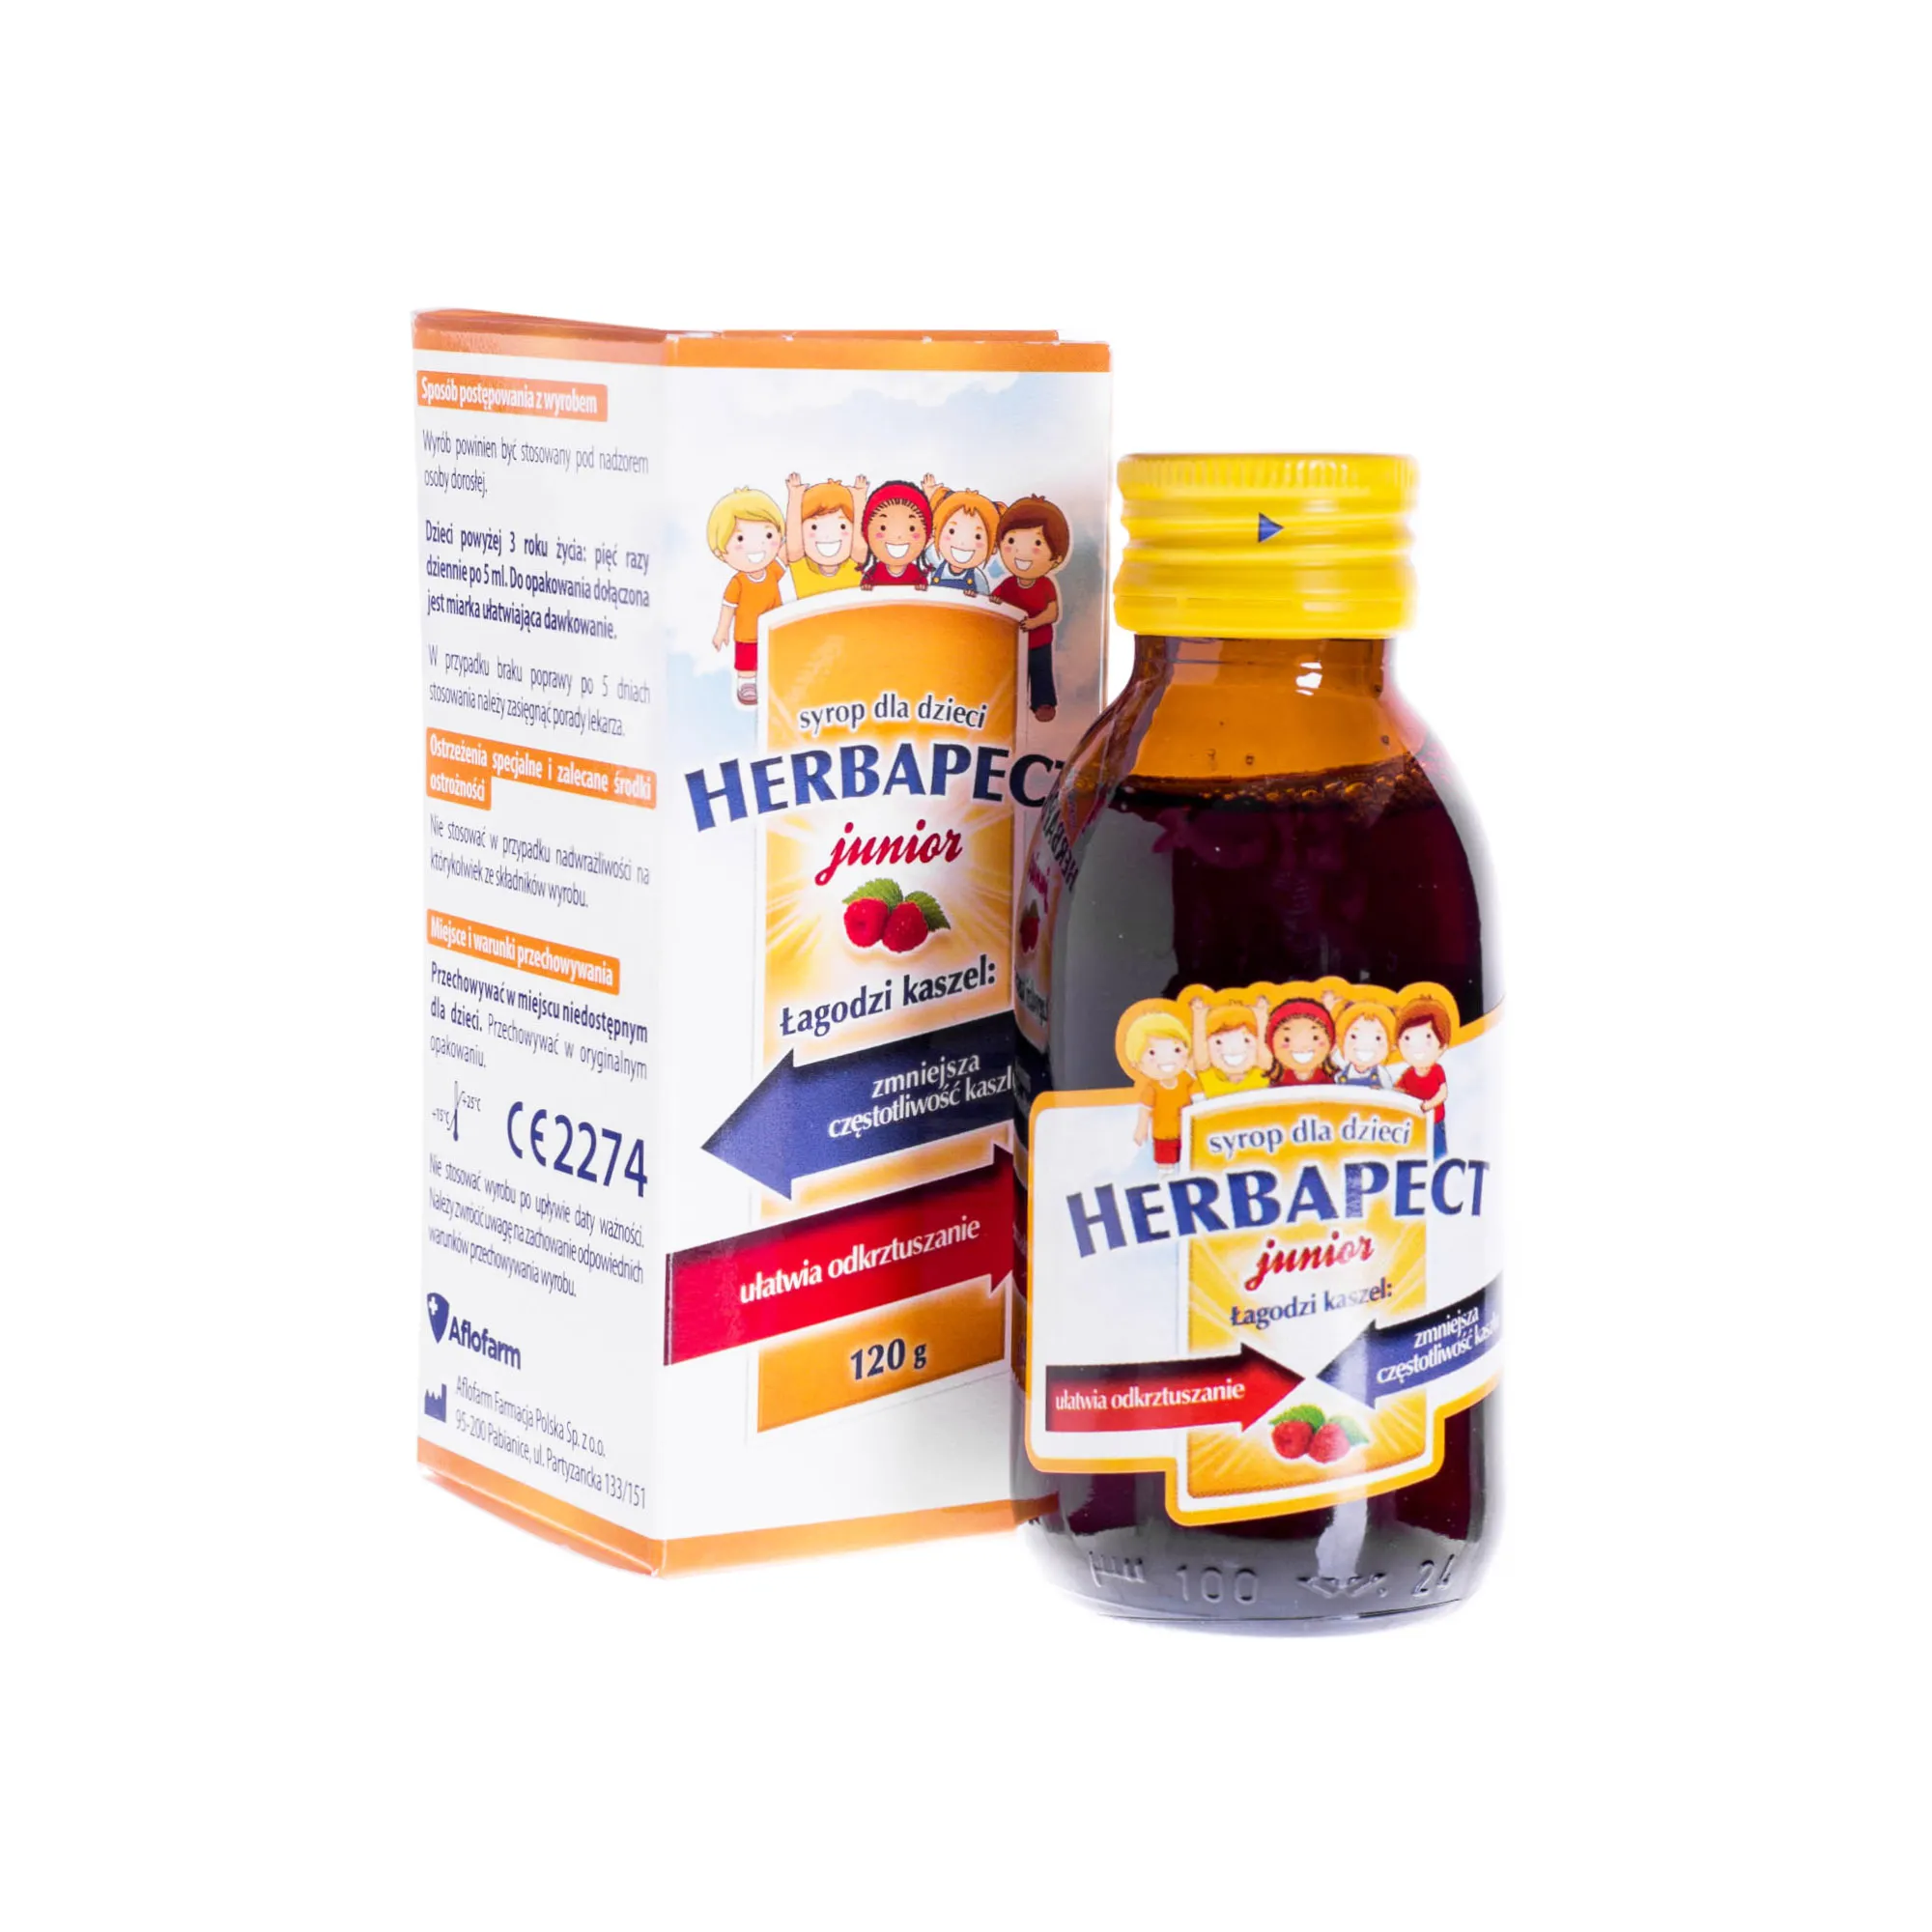 Herbapect Junior - syrop dla dzieci łagodzący kaszel, 120 g 